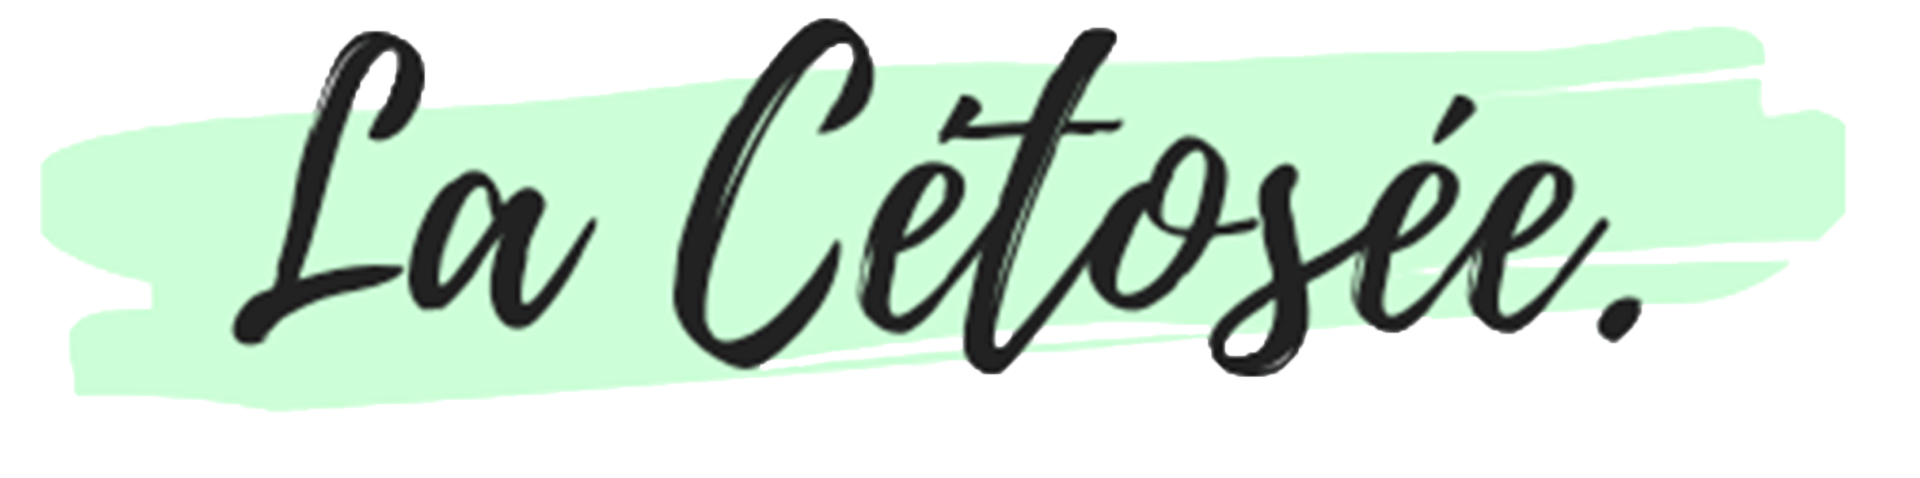 Logo officiel La Cétosée, site de conseil et coaching en nutrition low Carb et cétogène